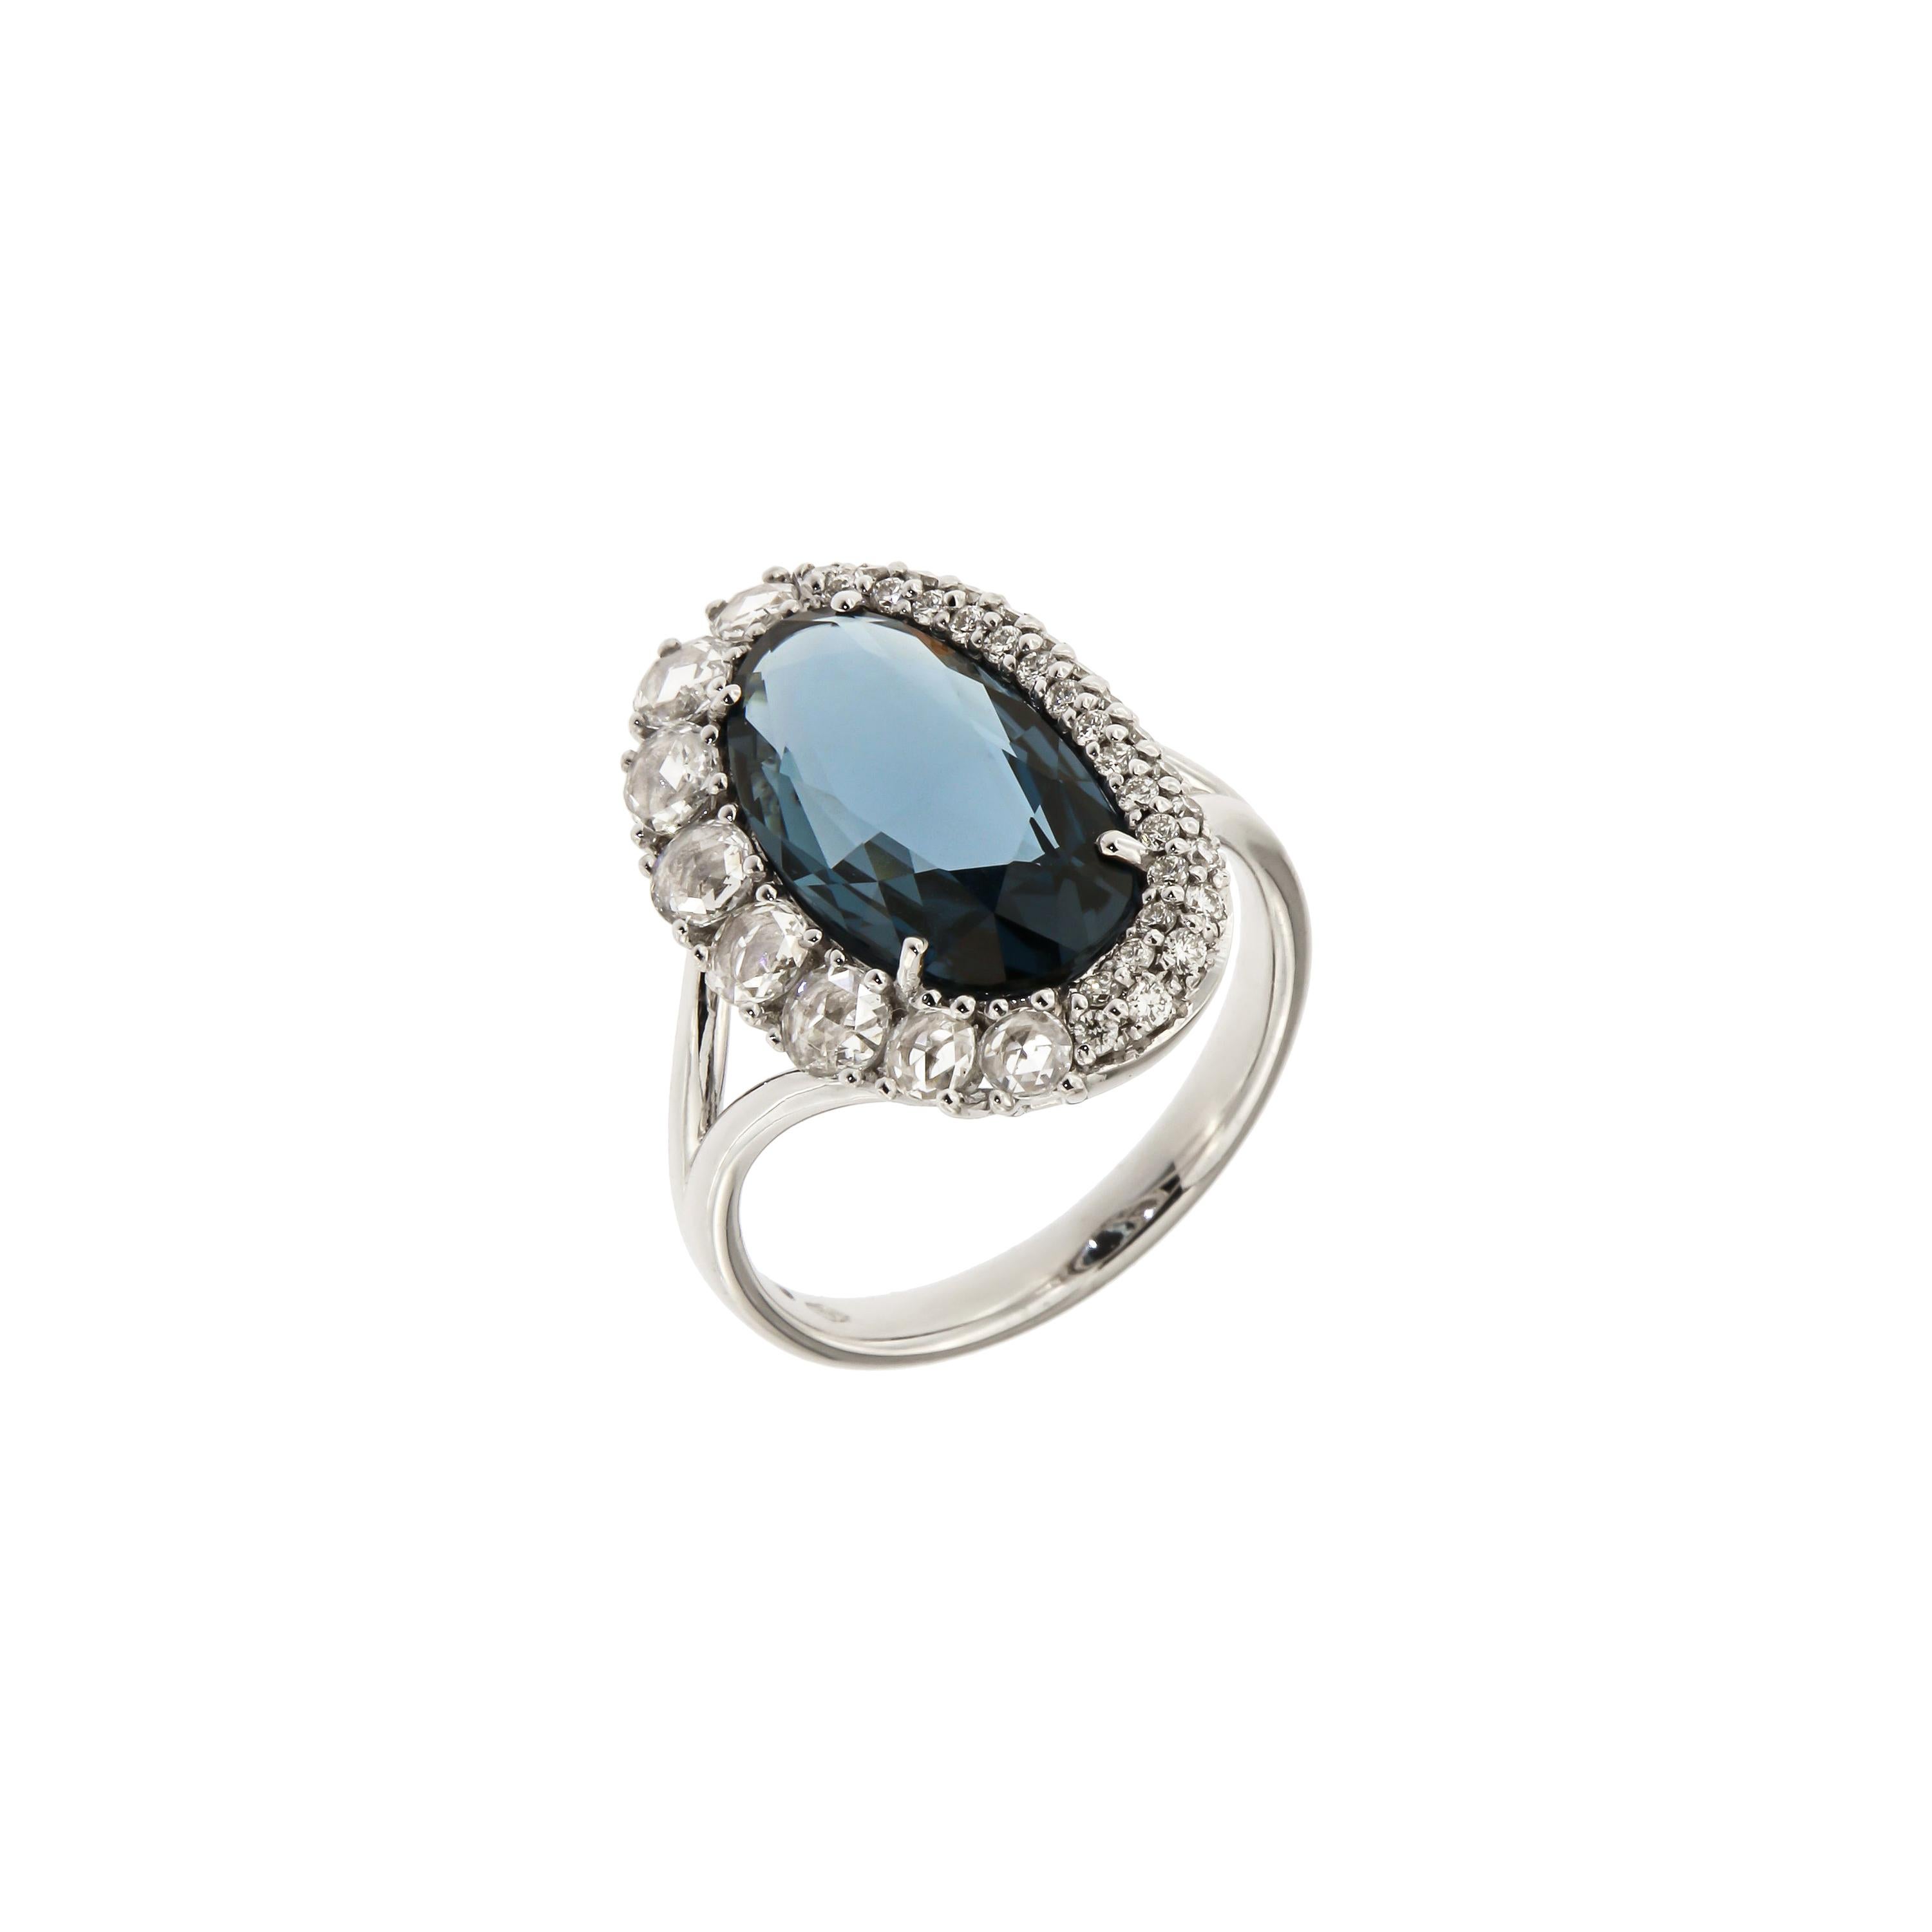 Italian Breathtaking 18k London Blue Topaz Diamonds White Gold Ring for Her For Sale